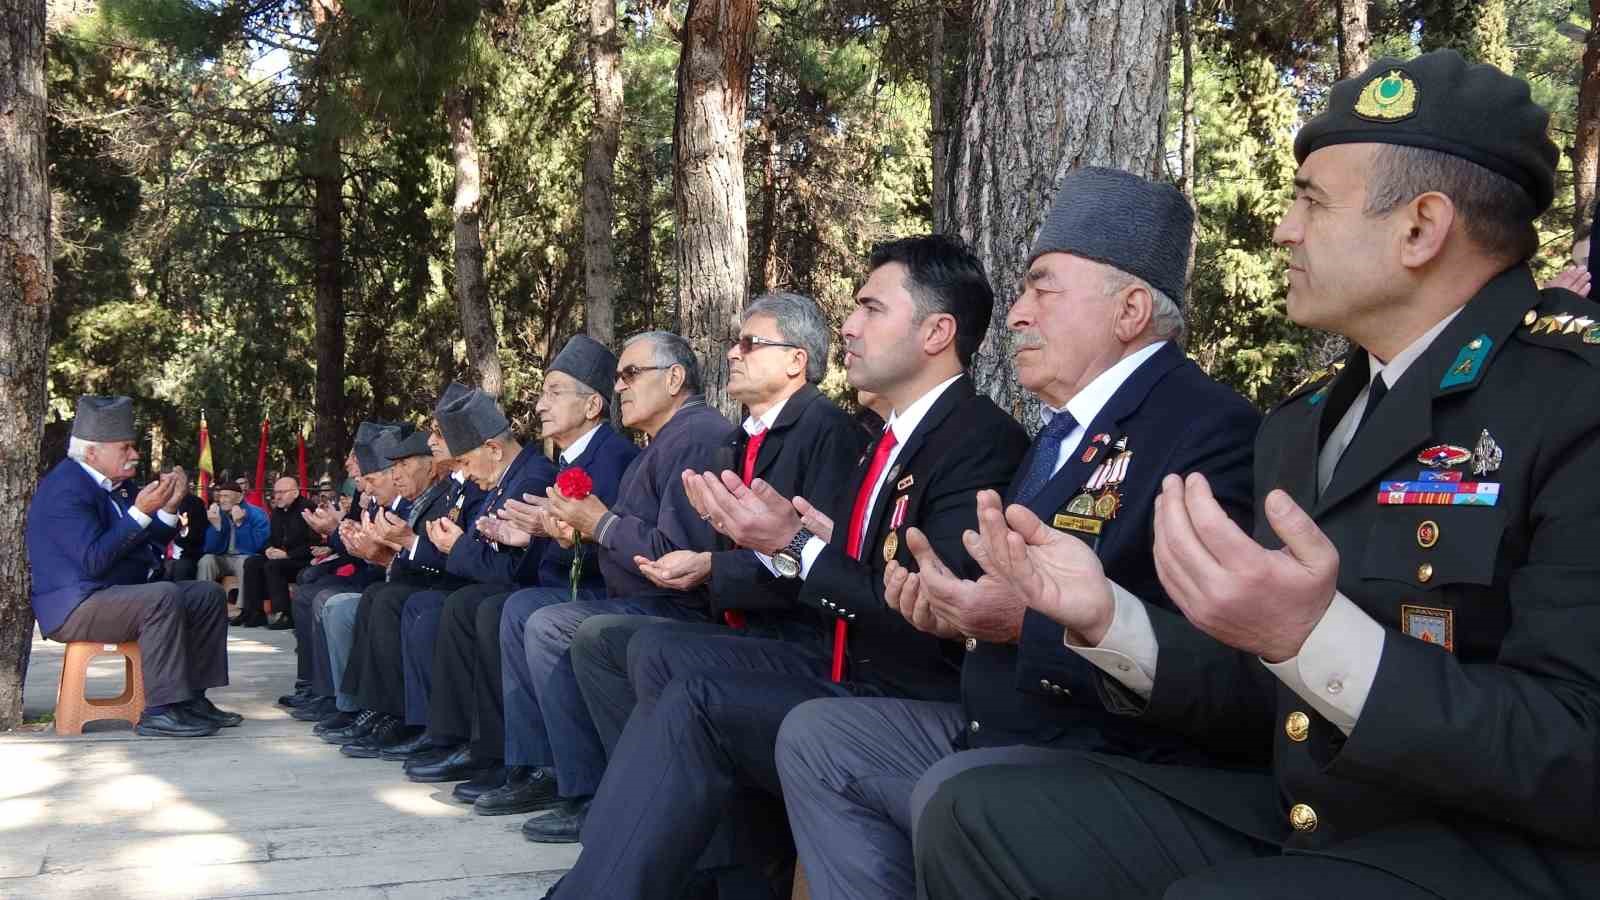 Burdur’da, 18 Mart Şehitleri Anma ve Çanakkale Deniz Zaferi’nin 109. yıl dönümü
